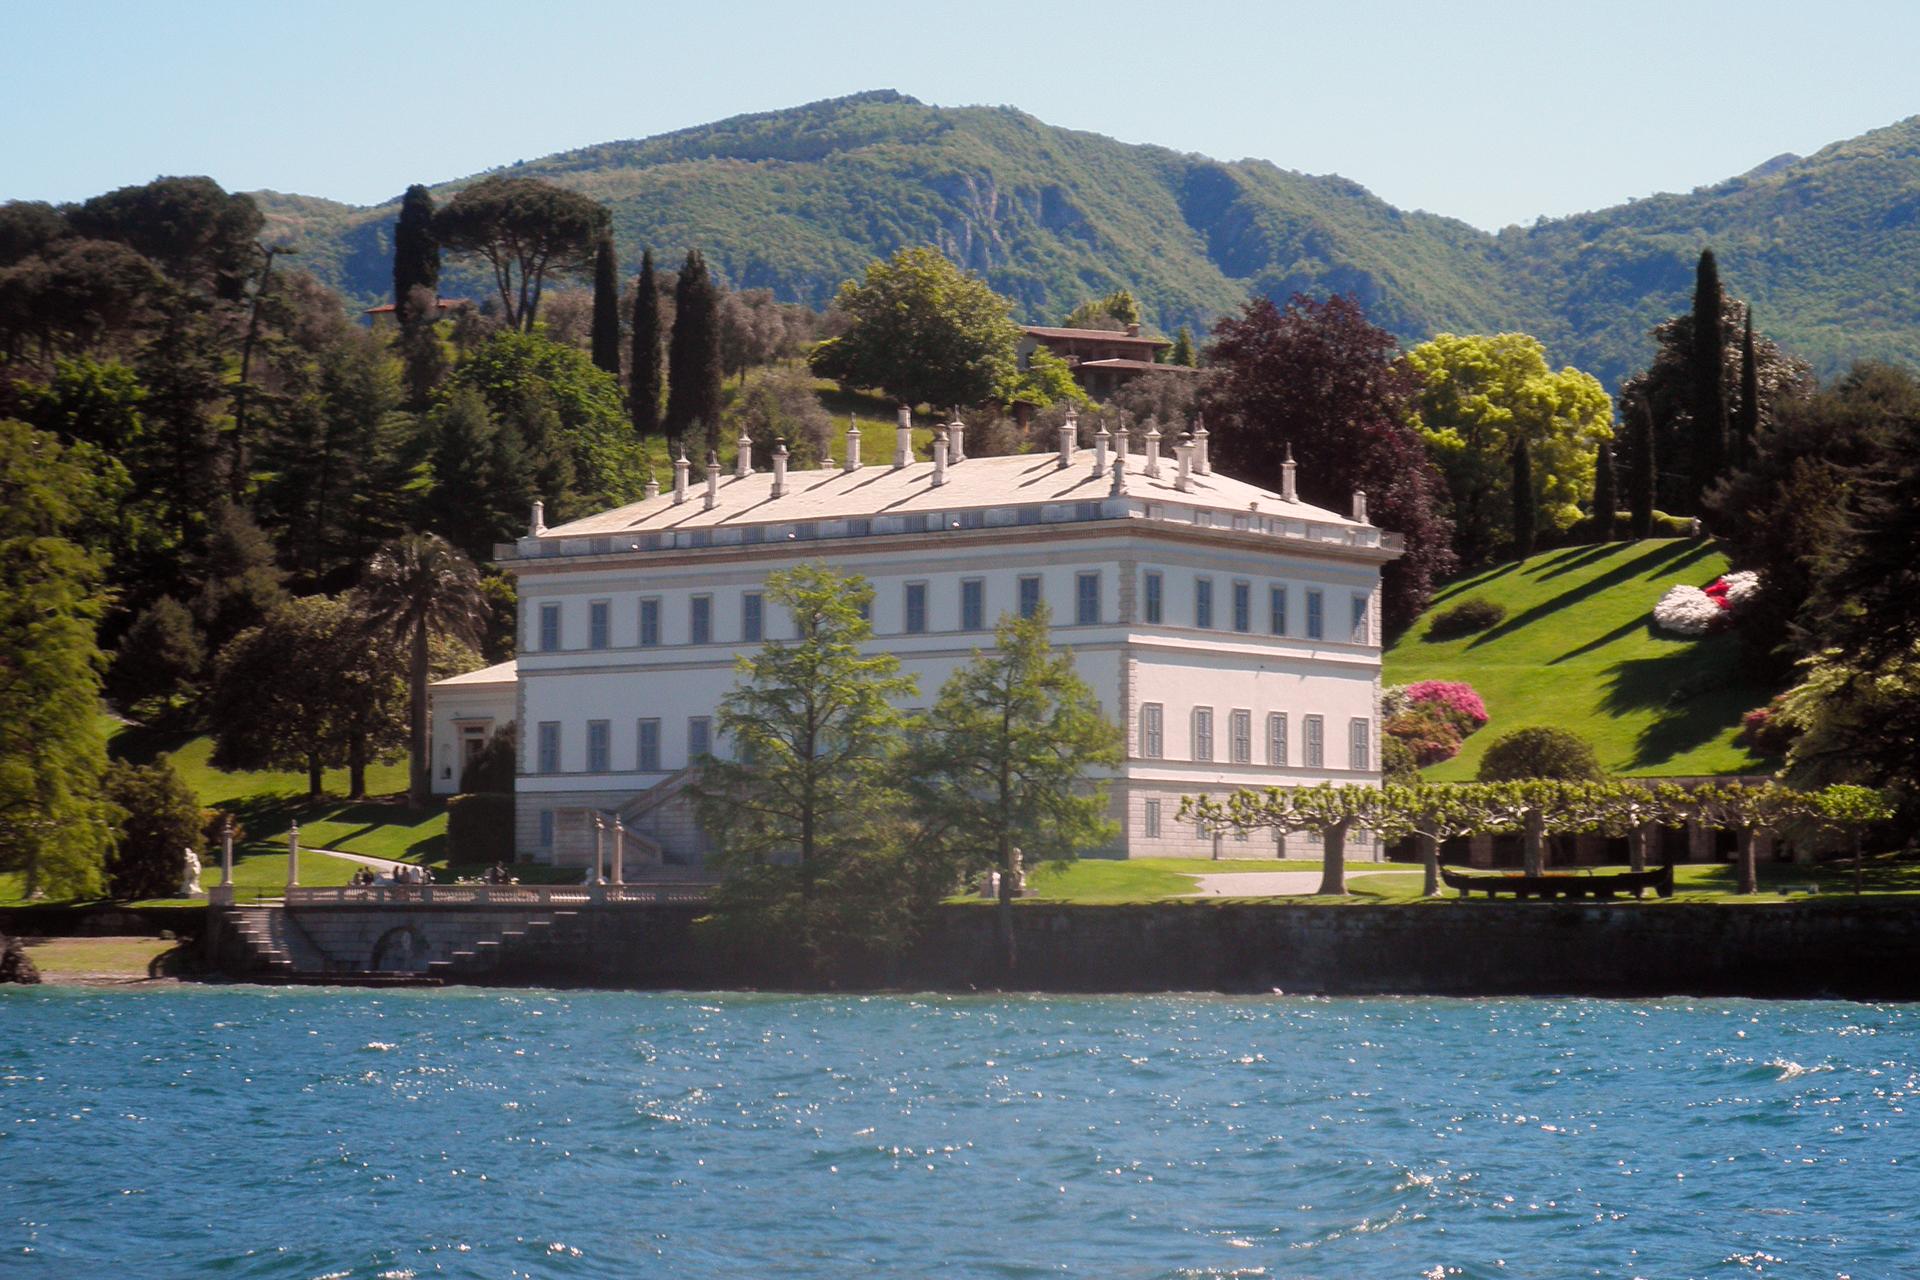 Cover image of this place Giardini di Villa Melzi